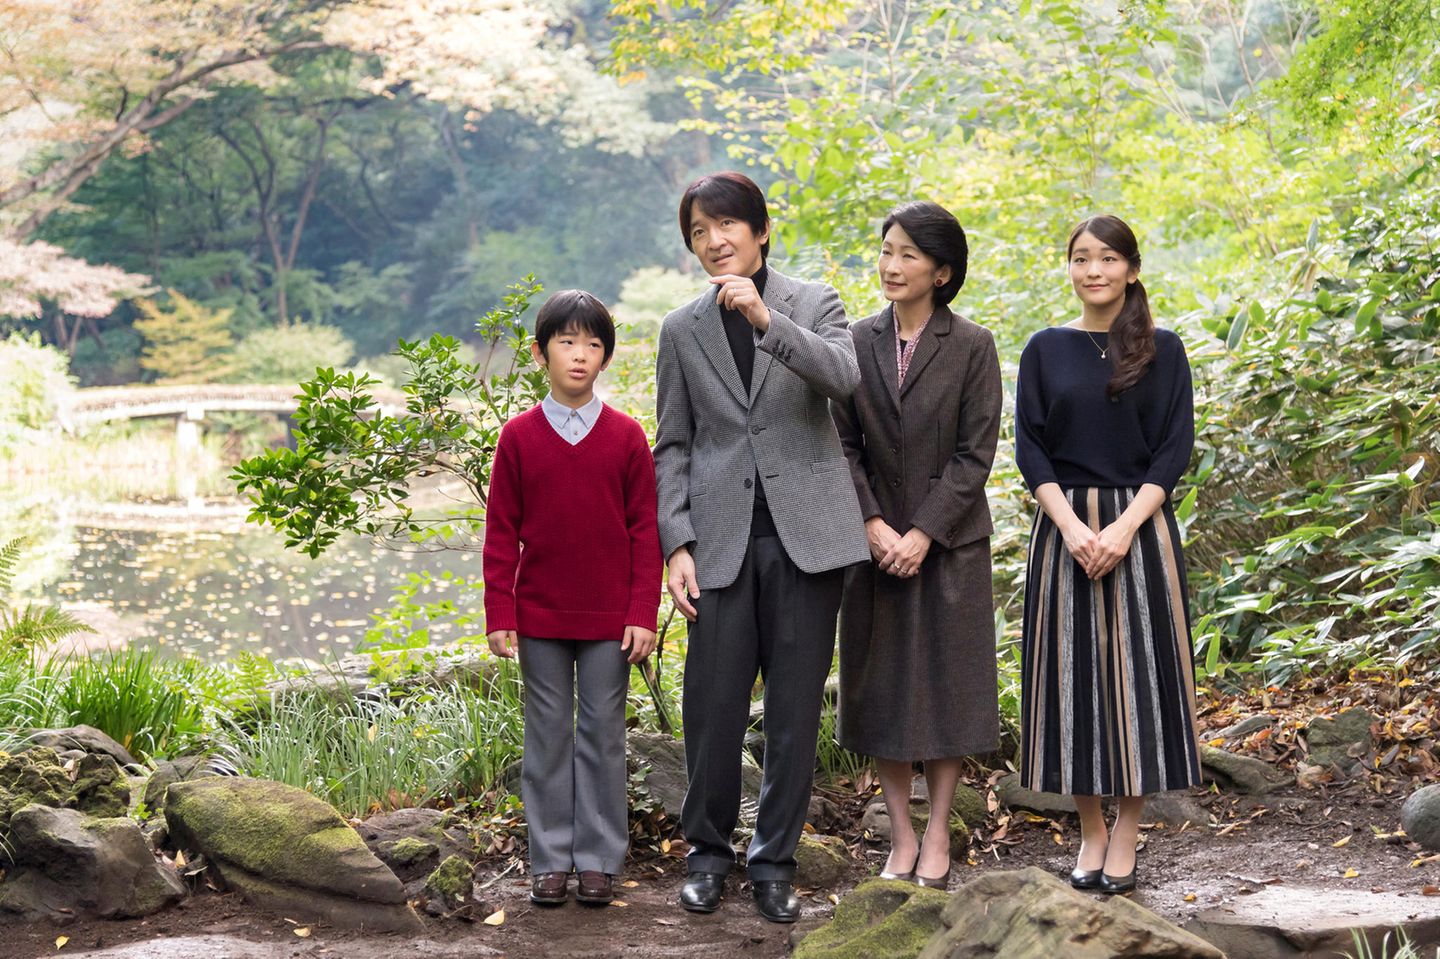 30. November 2017  Prinz Akishino feiert heute seinen 52. Geburtstag. Zu diesem Anlass wird eine neues Familienfoto veröffentlicht. Das Bild zeigt Prinz Akishino gemeinsam mit seiner Frau Prinzessin Kiko und den Kindern Prinz Hisahito und Prinzessin Mako, aufgenommen am 4. November im Garten ihrer Residenz in Akasaka. 